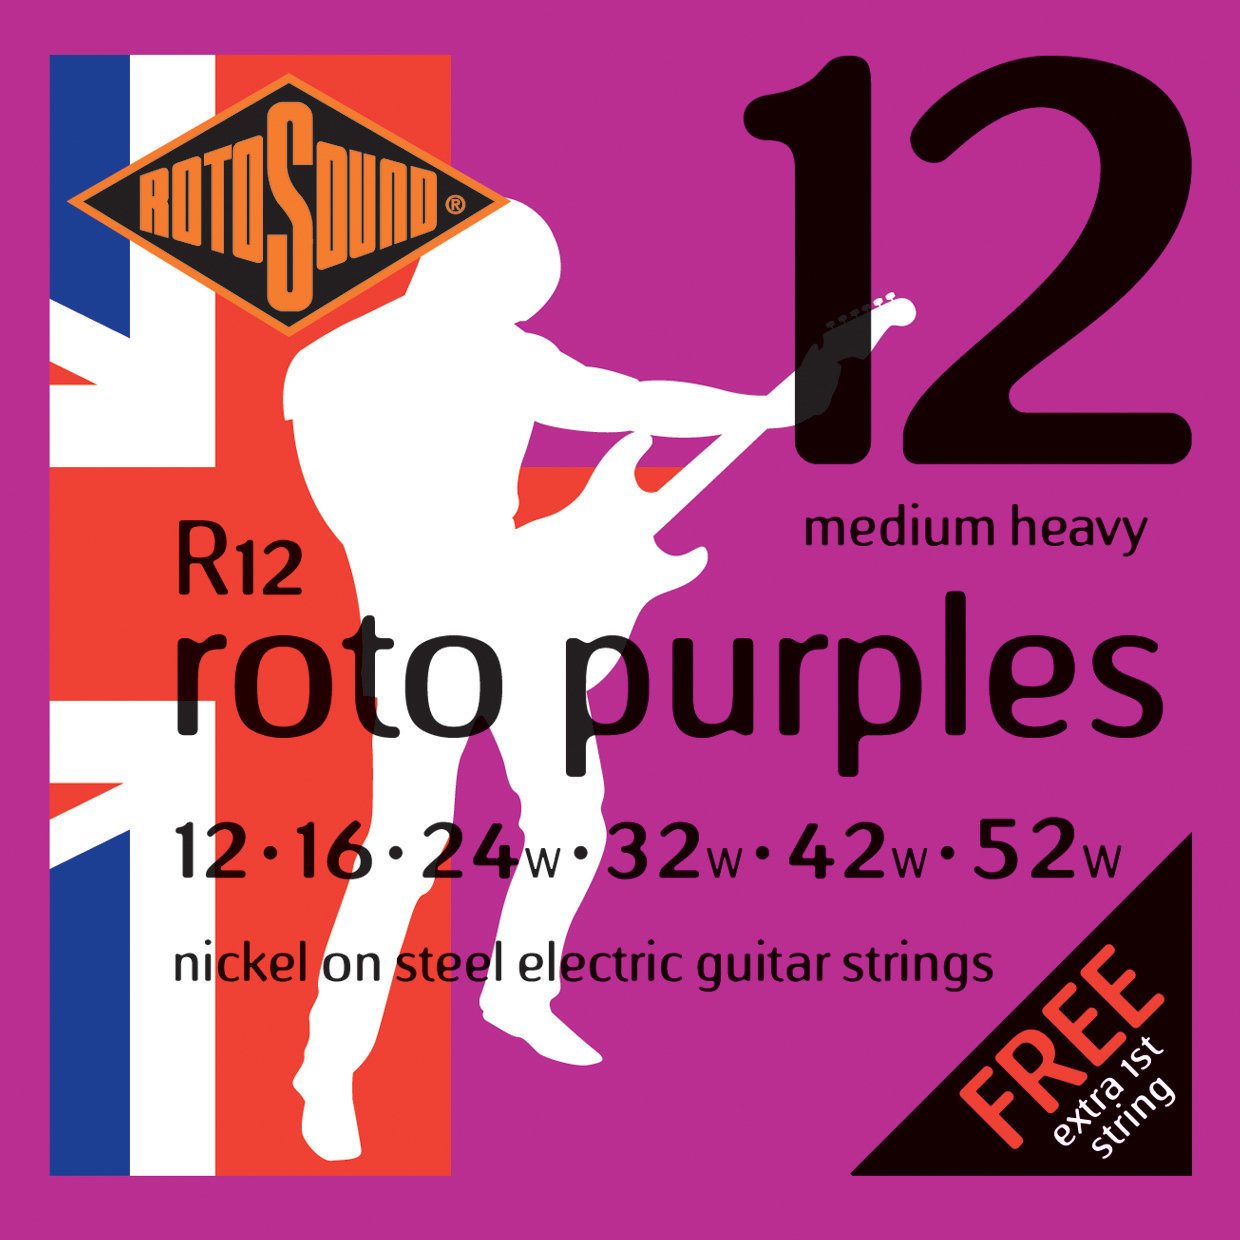 Struny pro elektrickou kytaru Rotosound R12